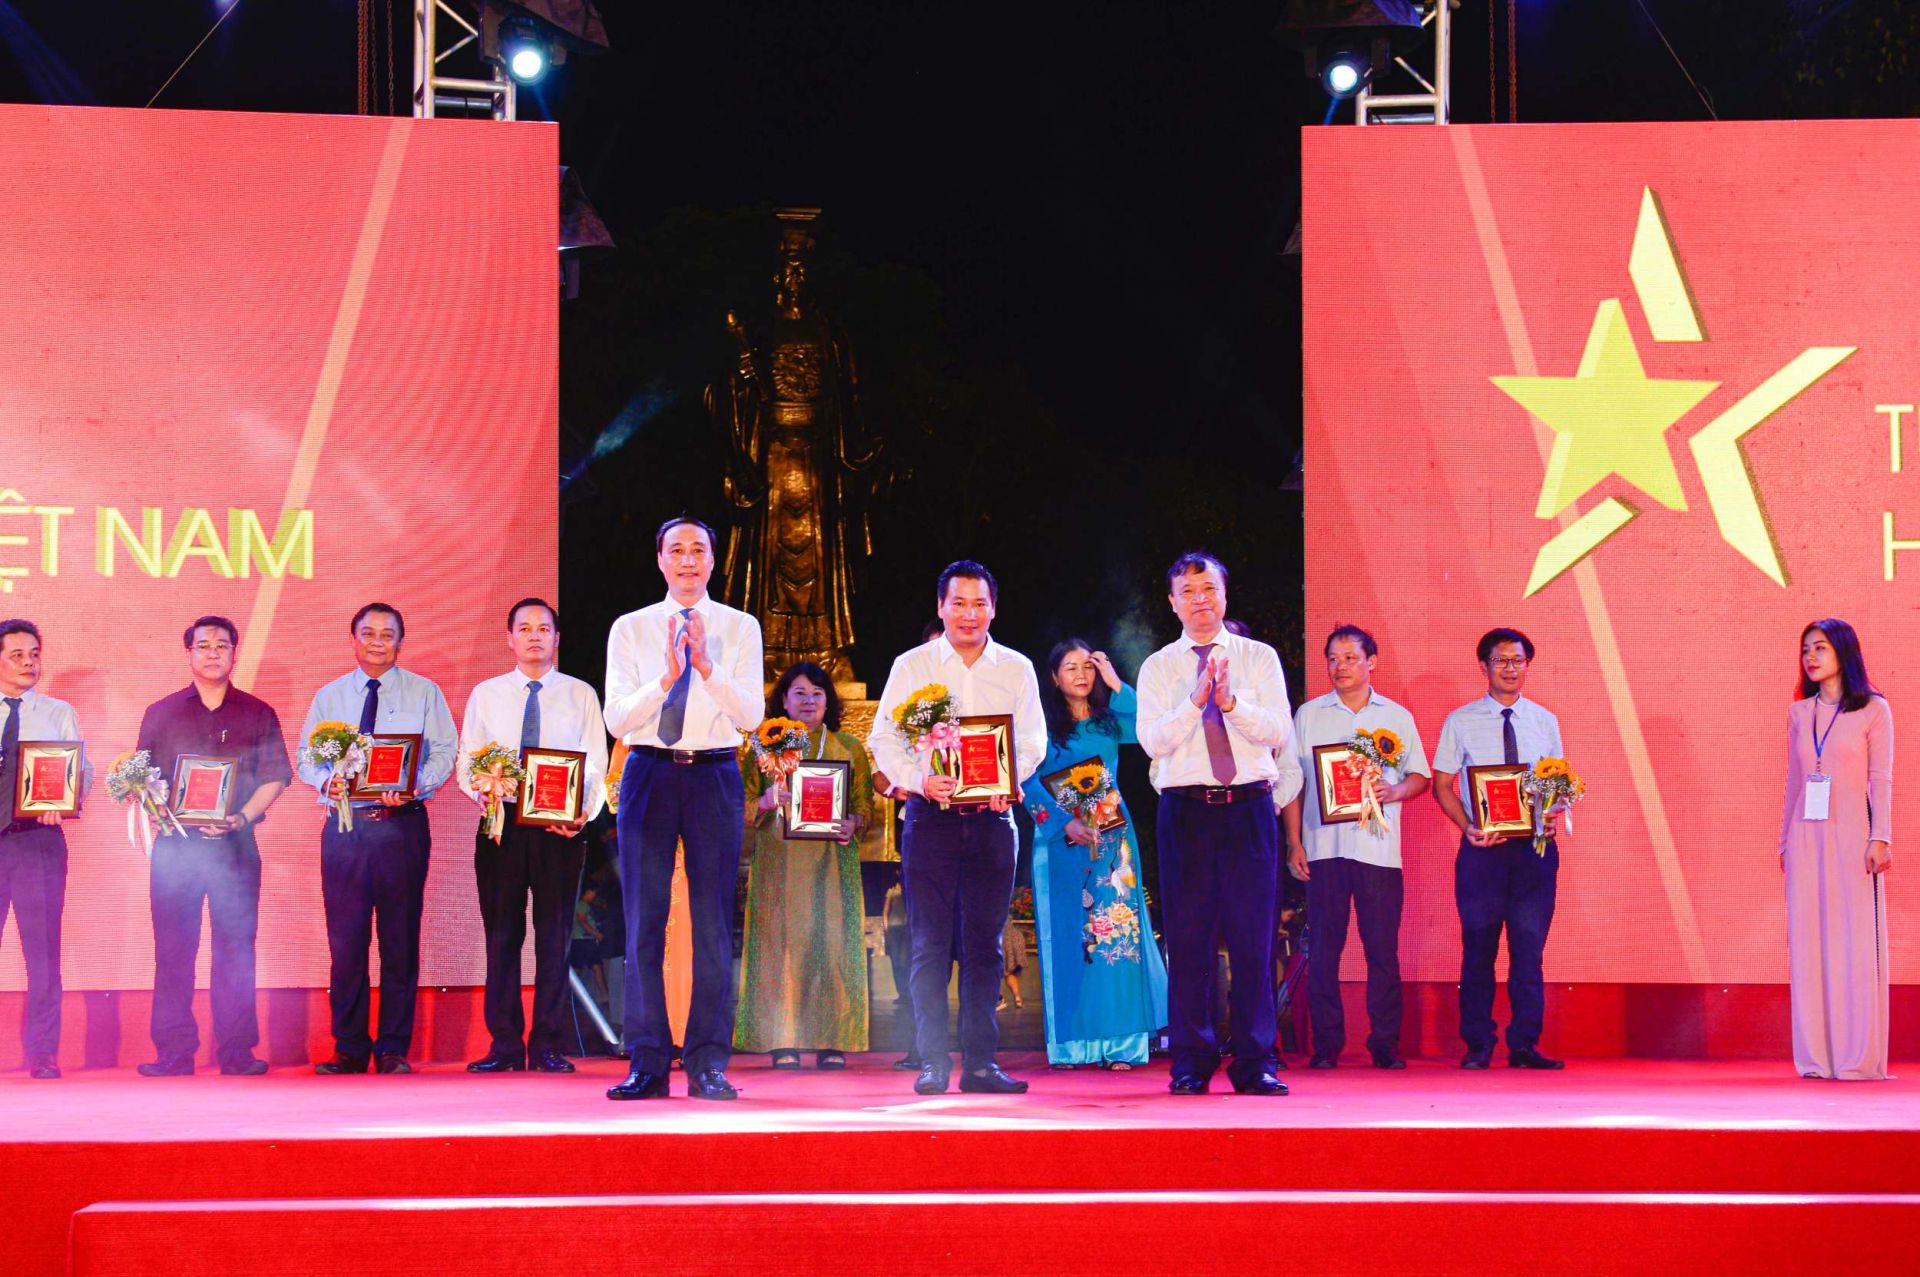 Phó Chủ tịch Ủy ban Trung ương Mặt trận Tổ quốc Việt Nam Phùng Khánh Tài (trái) và Thứ trưởng Bộ Công Thương Đỗ Thắng Hải (phải) trao kỷ niệm chương cho đại diện Tổng Công ty CP Bia - Rượu - Nước giải khát Sài Gòn